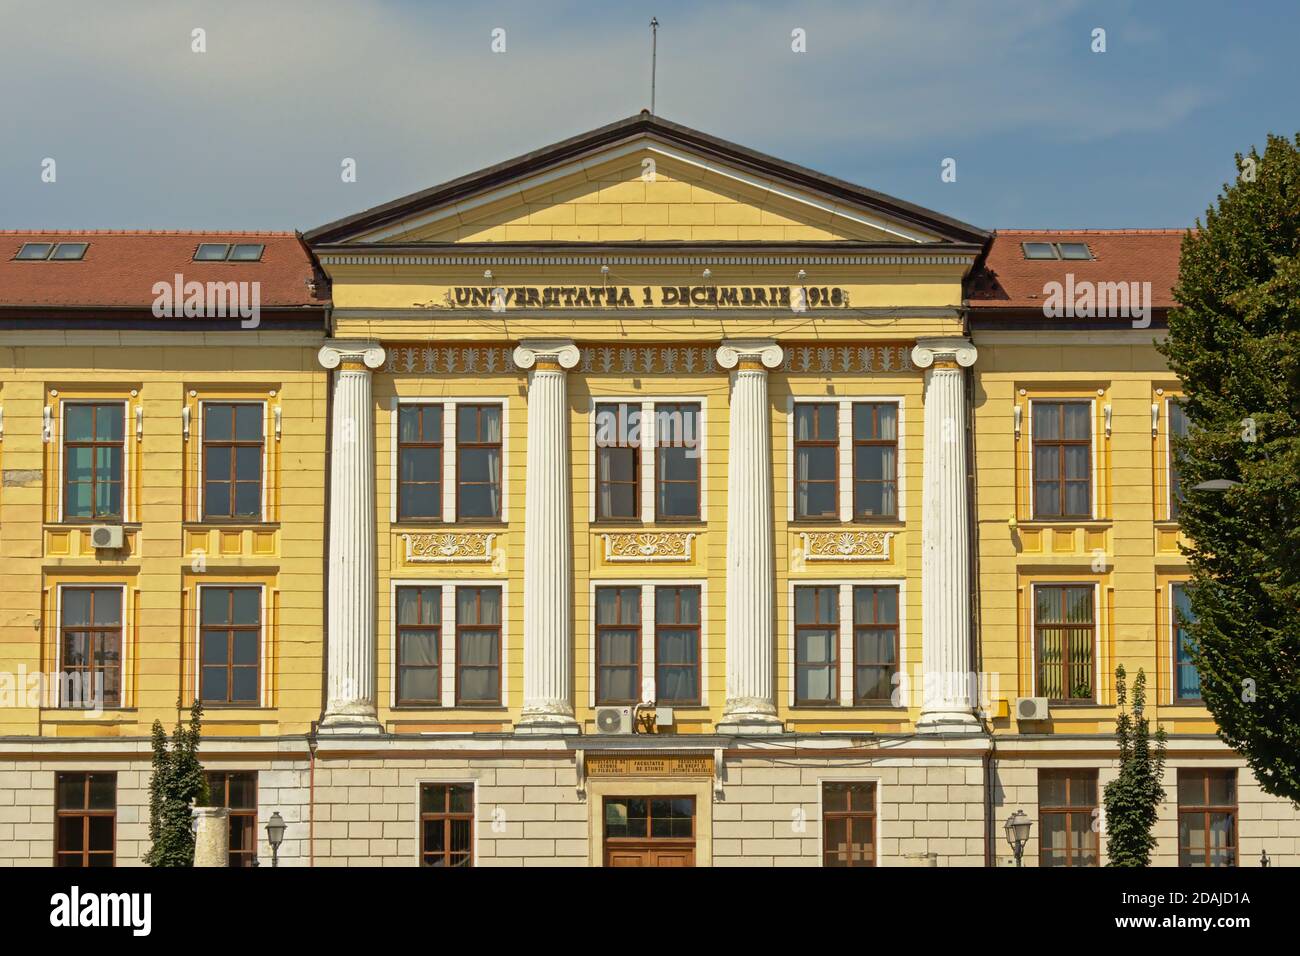 Gebäude der Universität `1 Decembrie 1918`, Alba Iulia, Siebenbürgen,  Rumänien Stockfotografie - Alamy